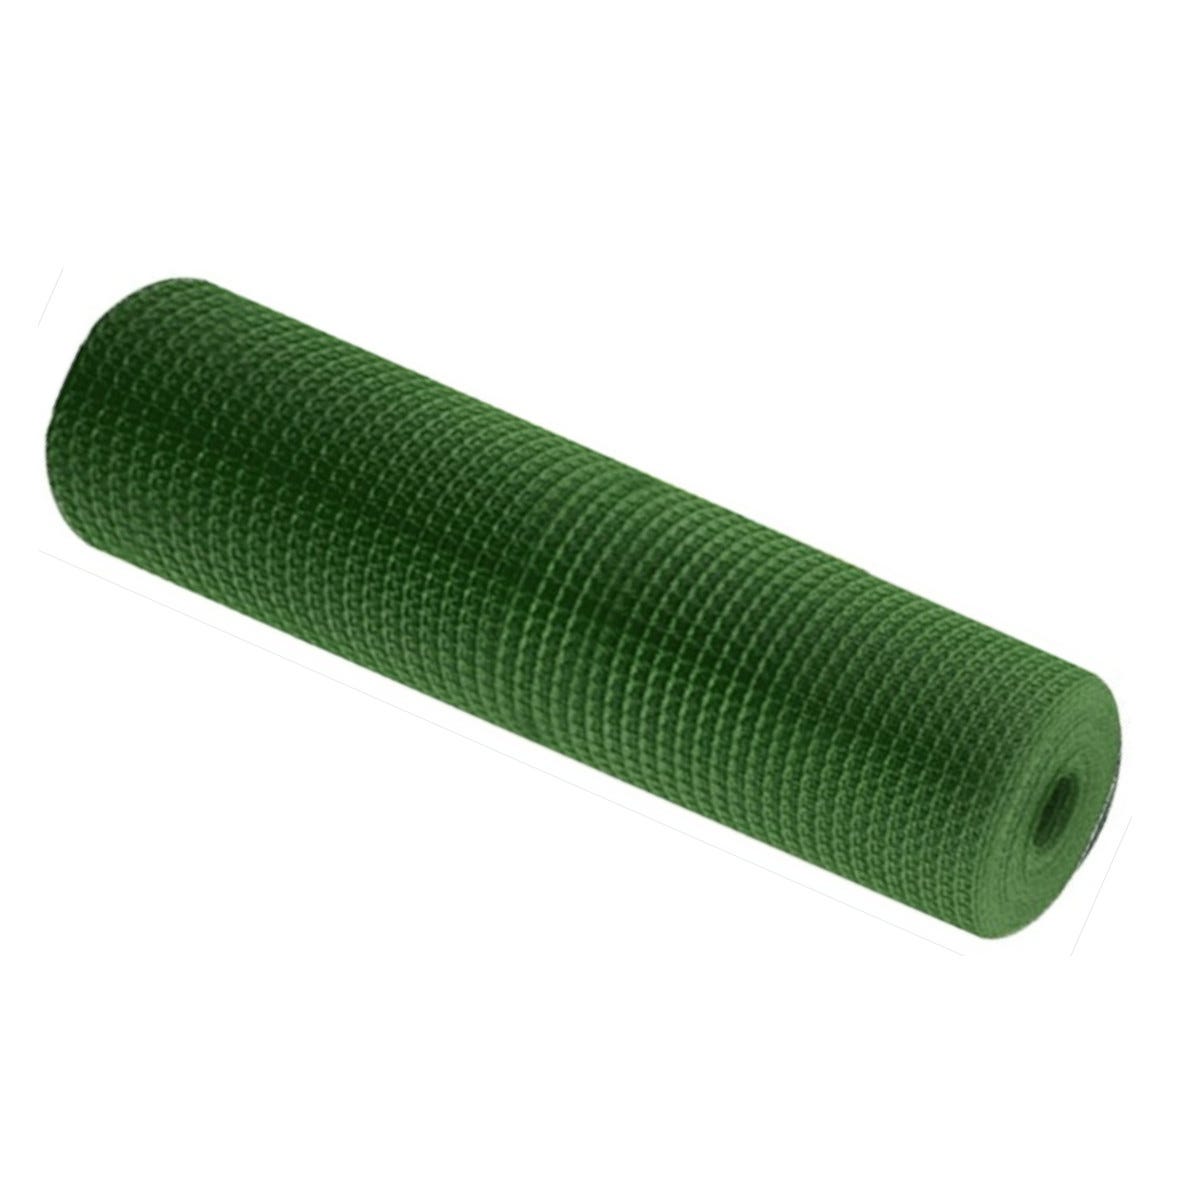 Rete Plastica, 1X30M, Verde, Composizione 100% PVC